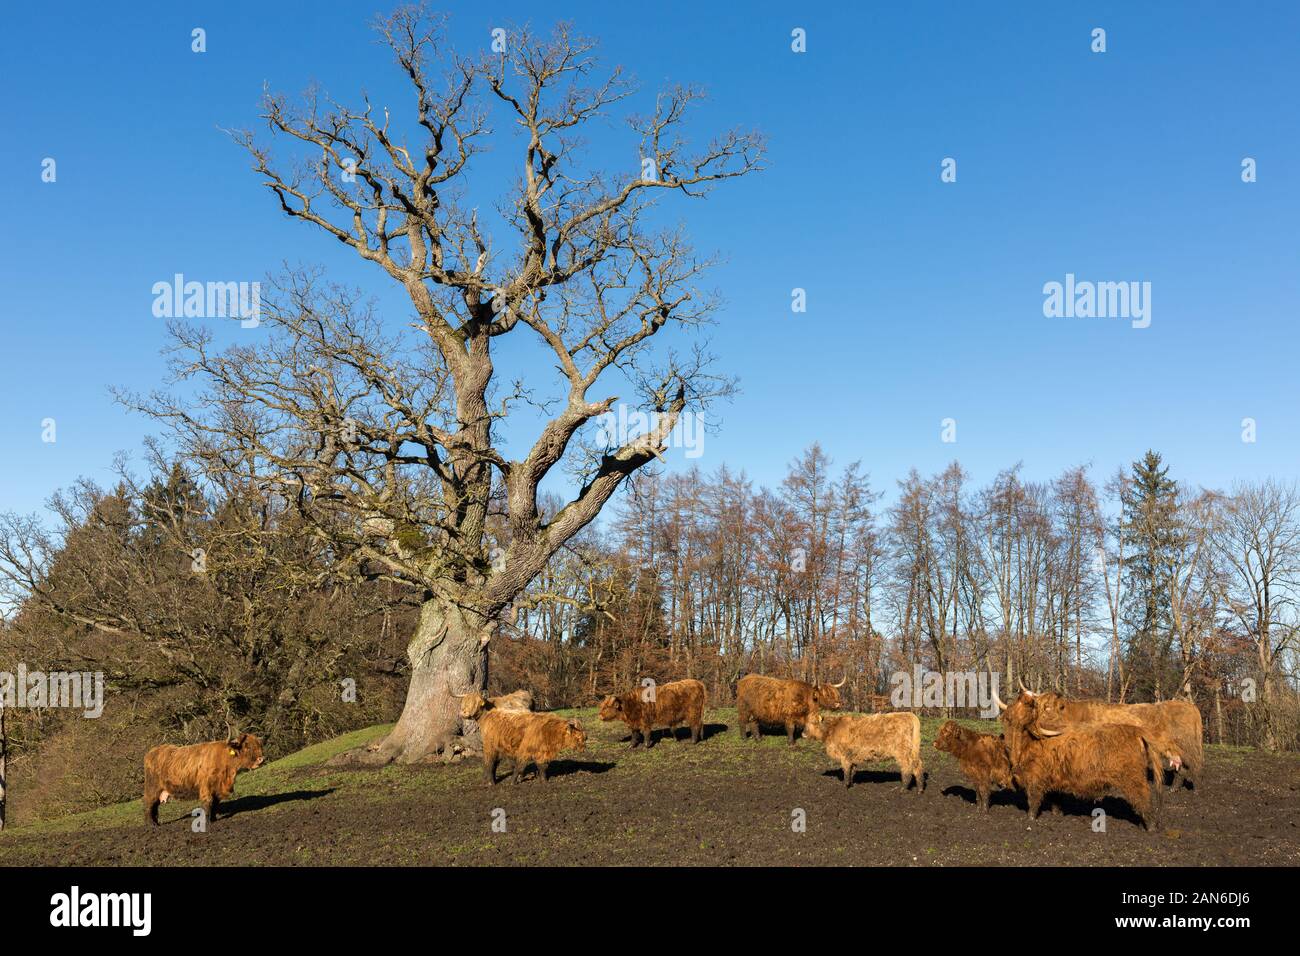 Herde von schottischen Highland-Rindern, die vor einem mächtigen Baum weiden. Highland Cattle zeichnet sich durch lange Hörner und langes, welliges Fell aus. Stockfoto